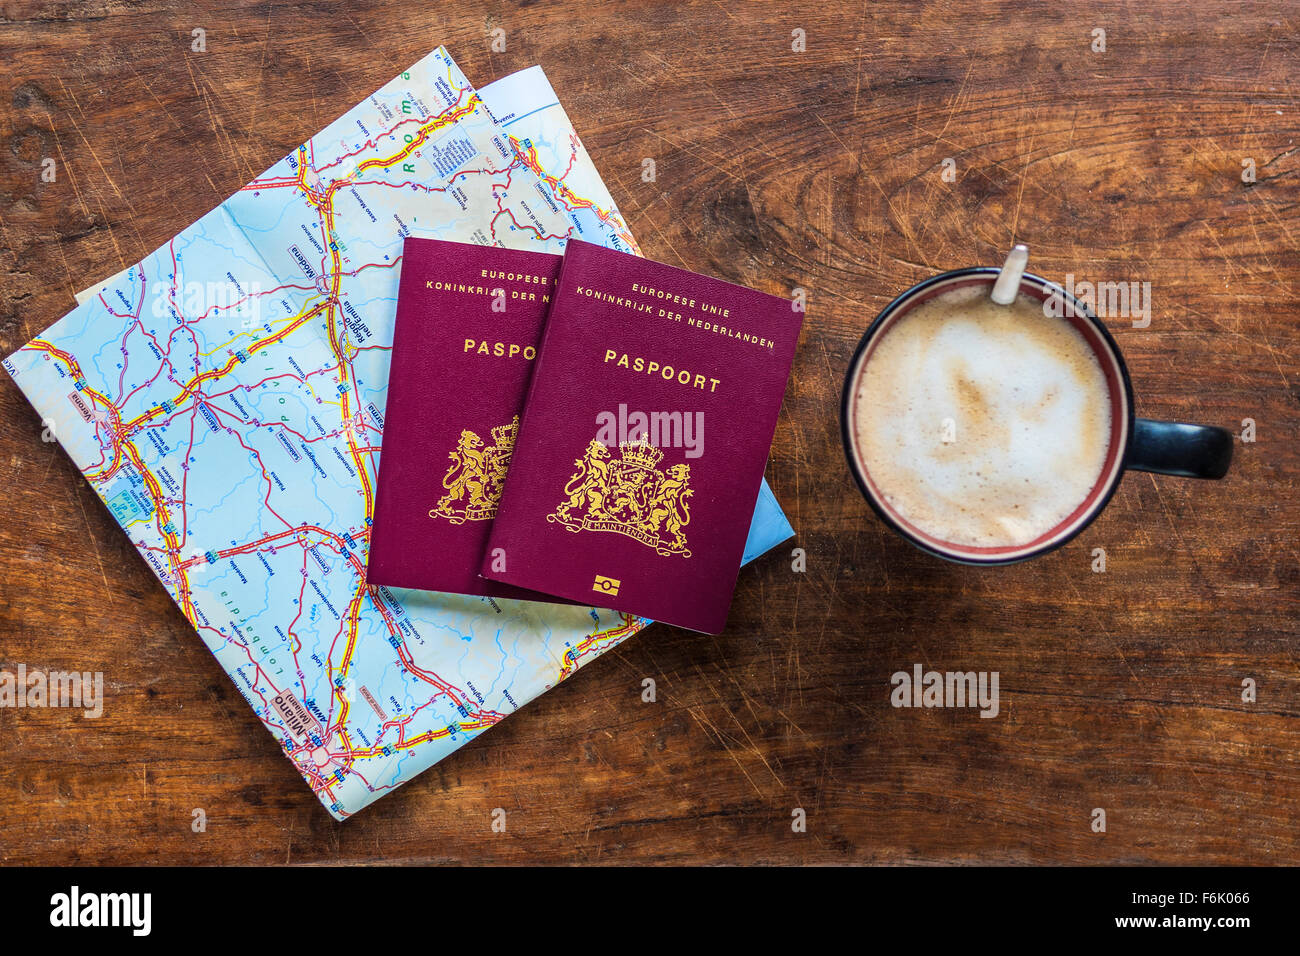 Vue de dessus d'un couple de passeports européens et du café Banque D'Images